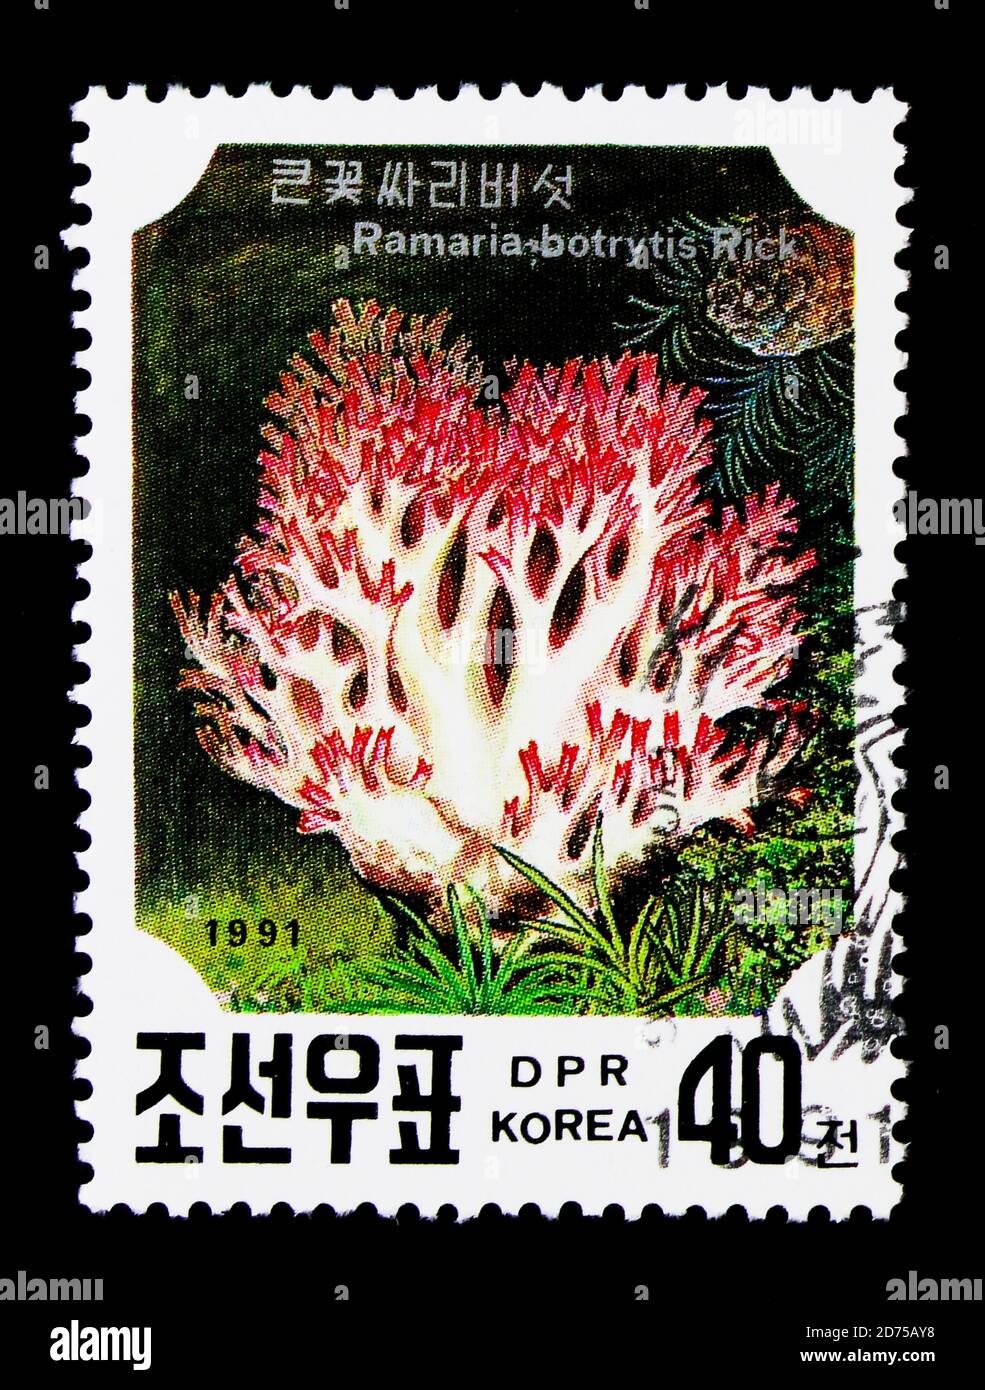 MOSCOU, RUSSIE - 25 NOVEMBRE 2017 : un timbre imprimé en république populaire démocratique de Corée montre le ramaria botrytis, une série de champignons, vers 1991 Banque D'Images